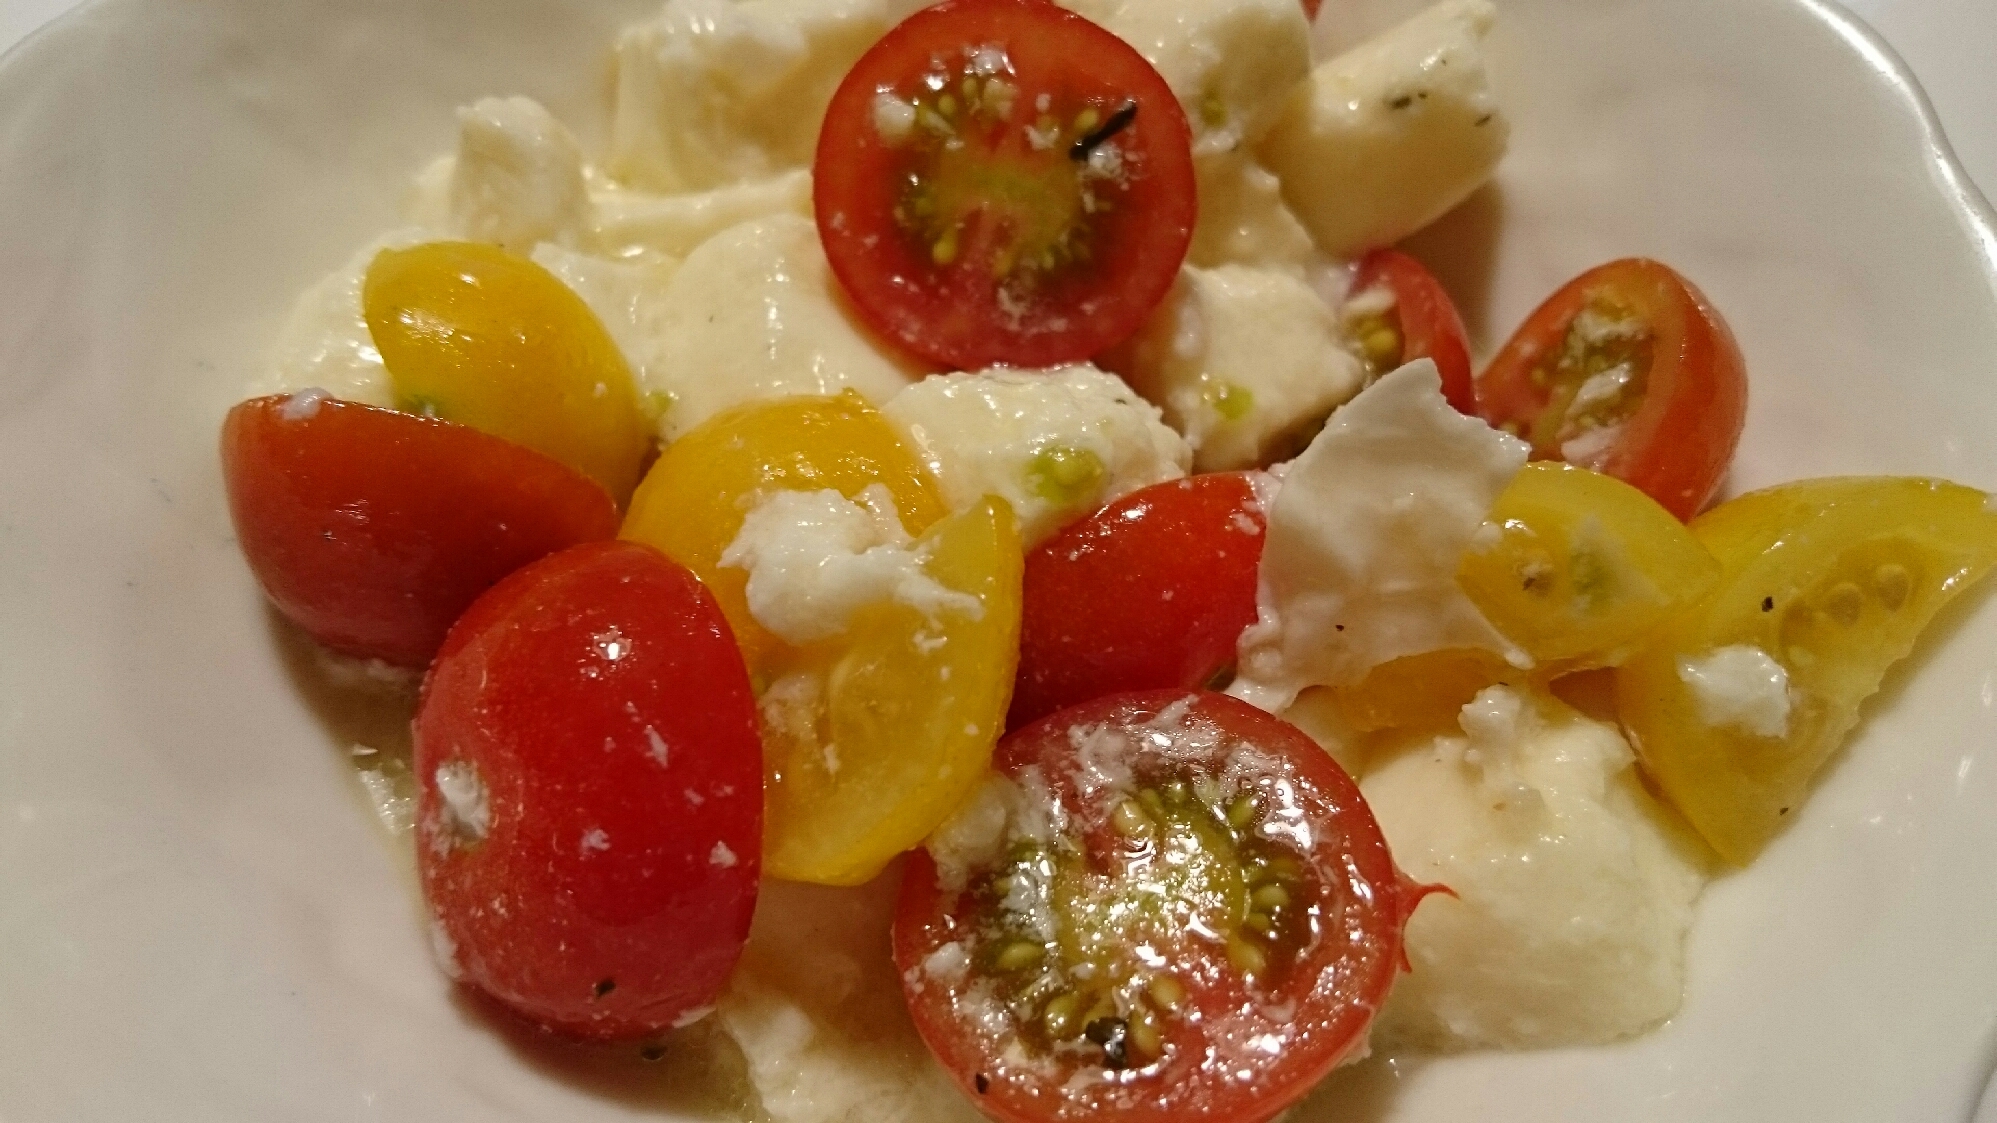 モッツァレラチーズとミニトマトのサラダ